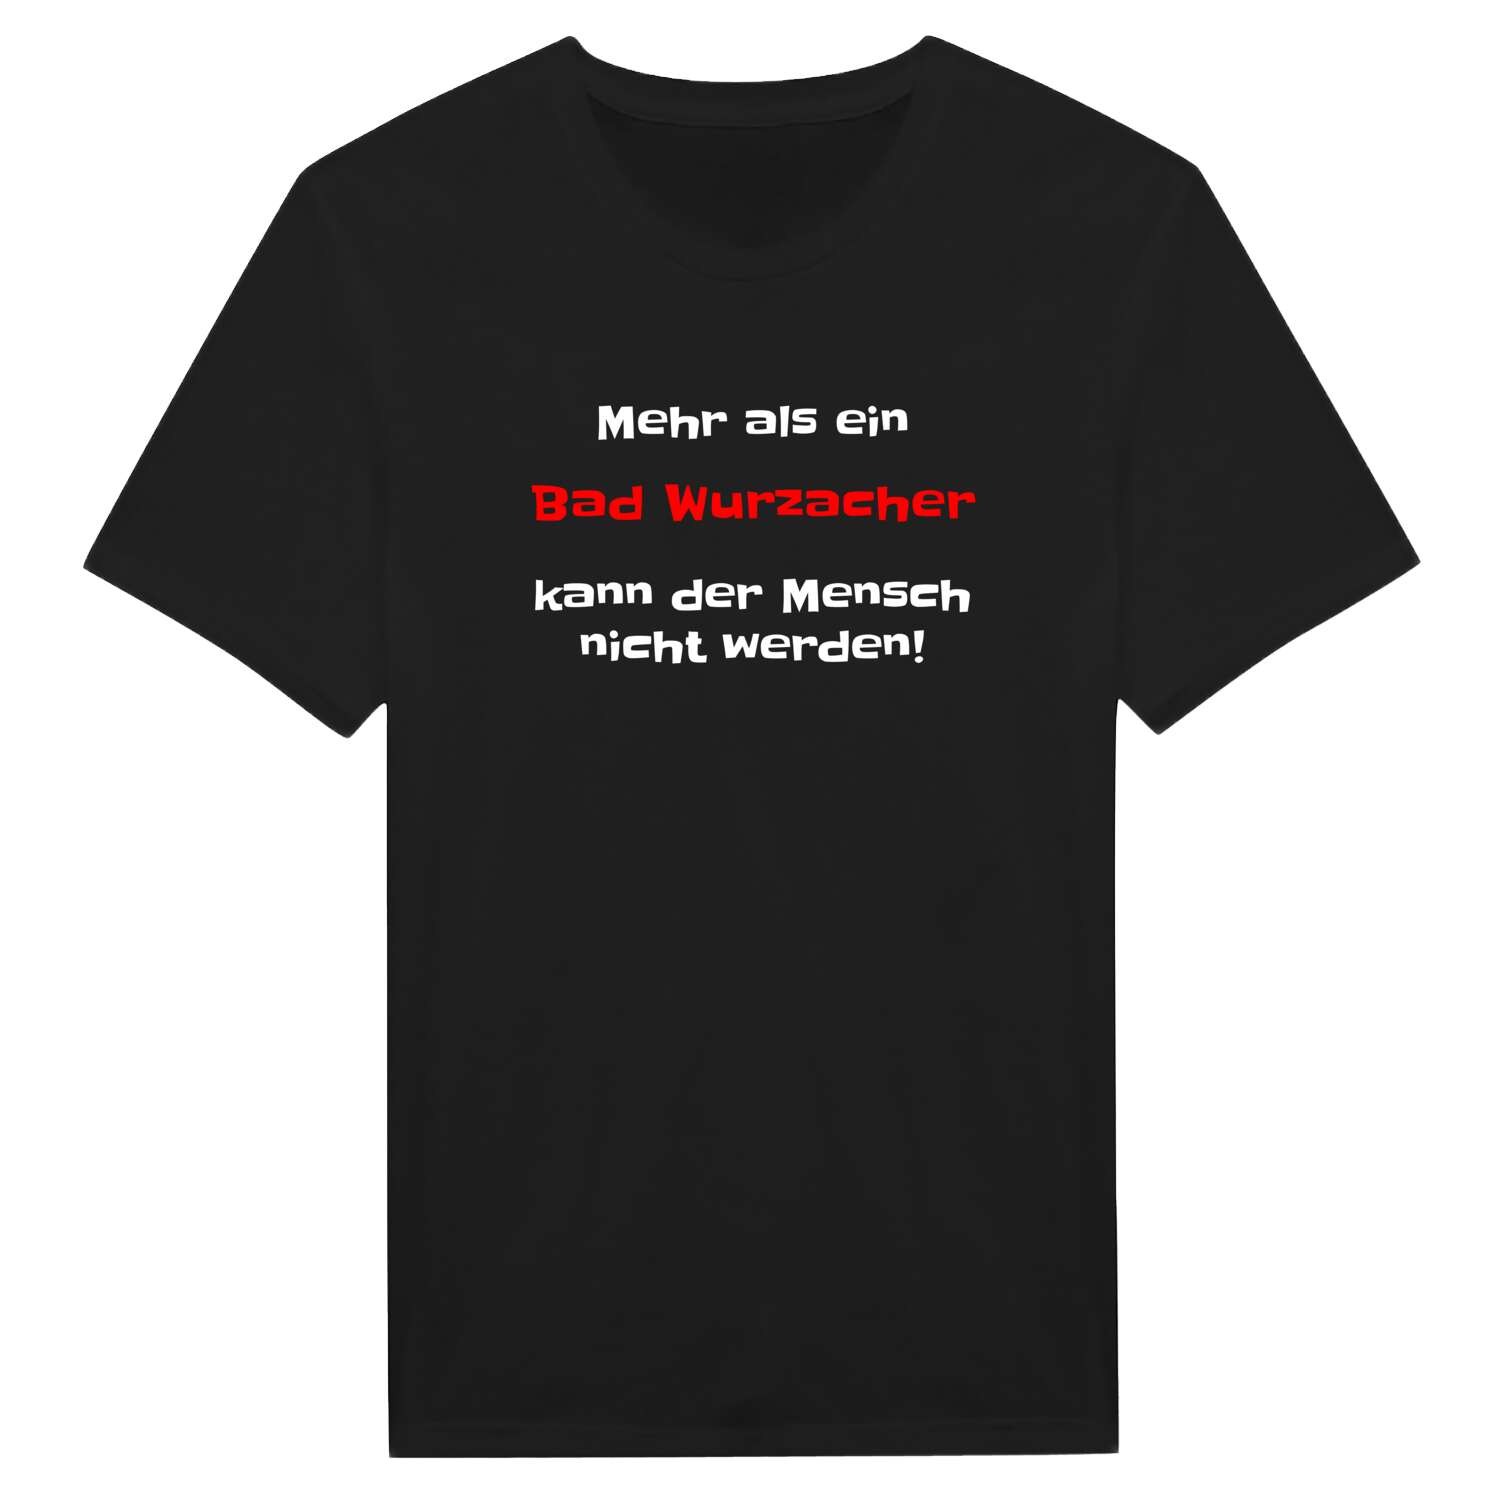 Bad Wurzach T-Shirt »Mehr als ein«